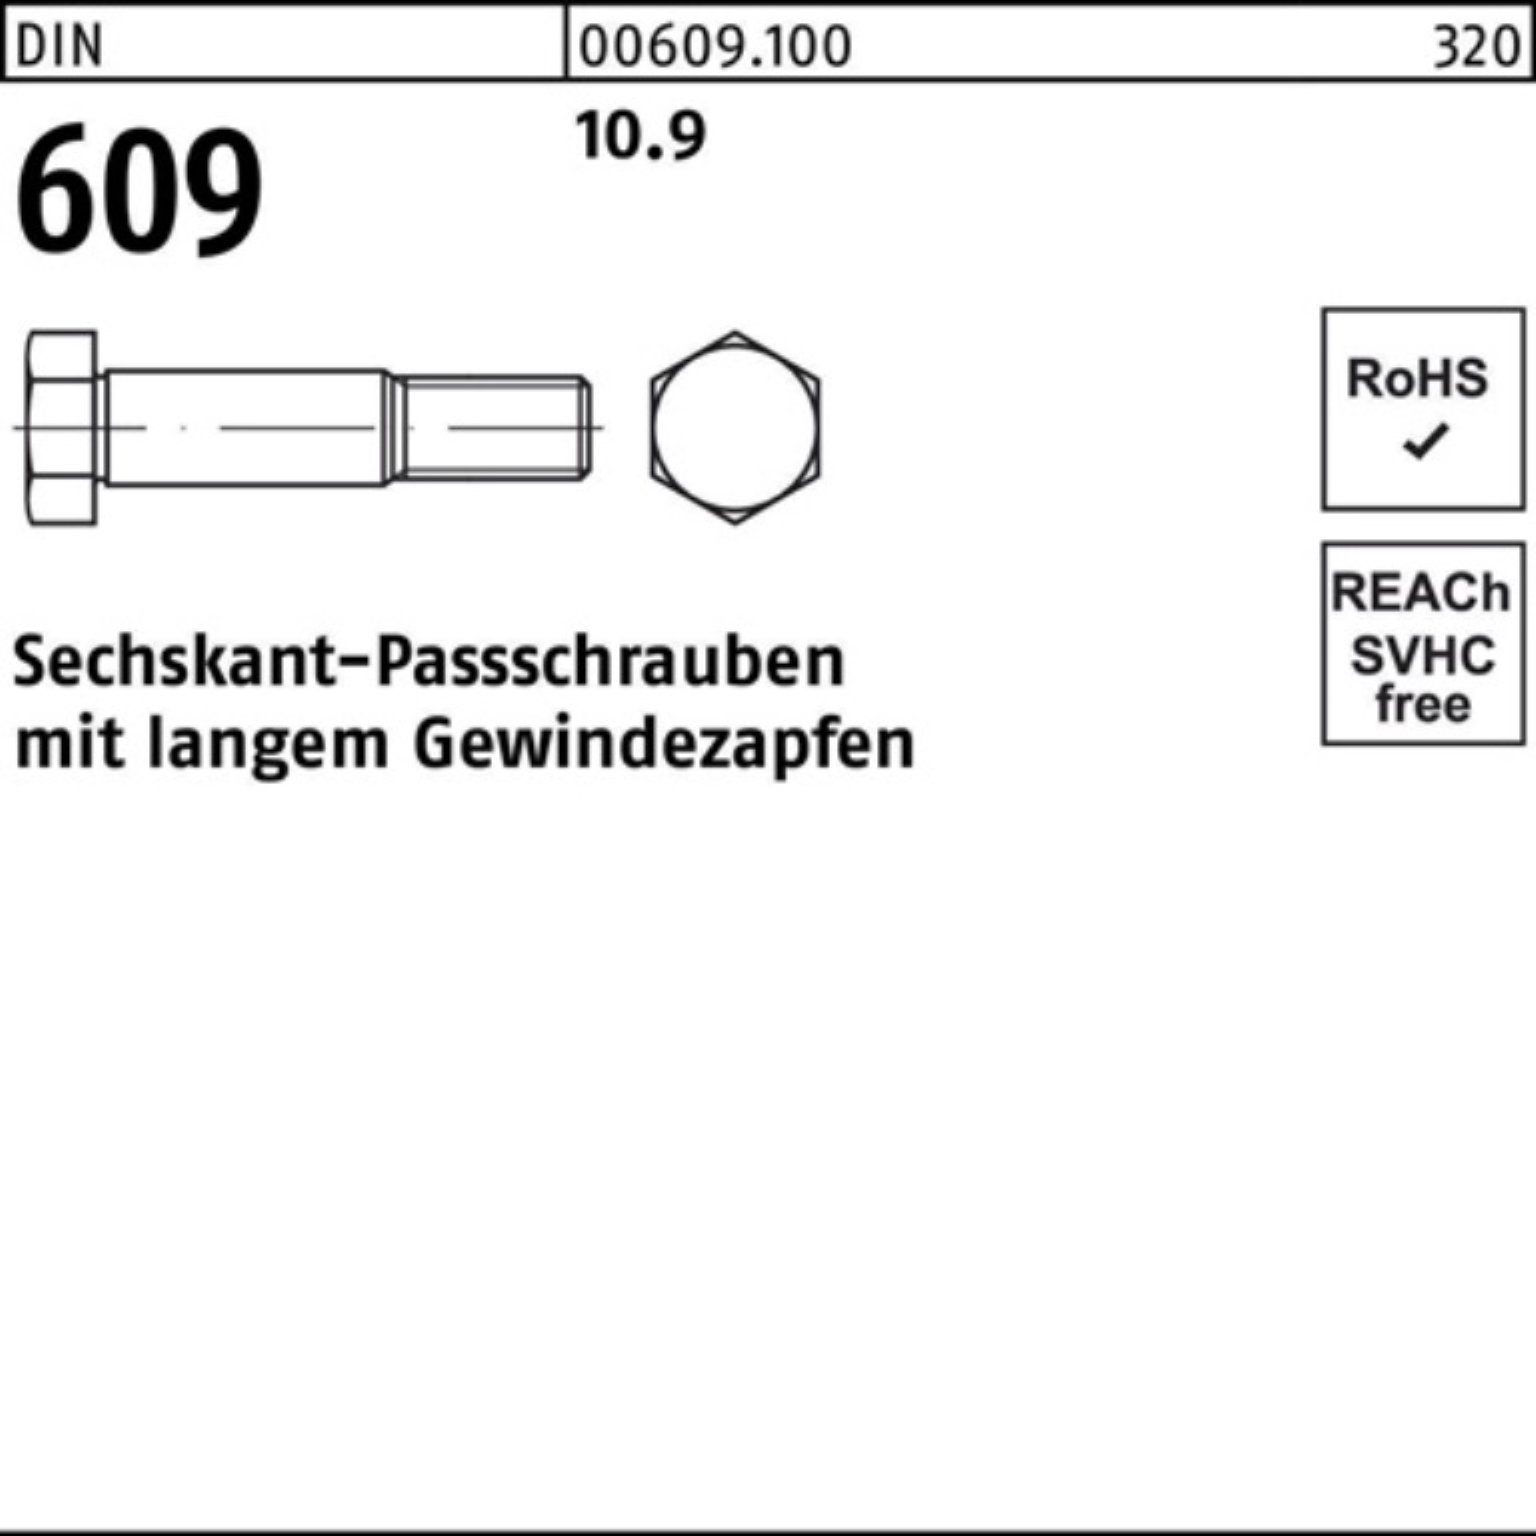 Schraube Sechskantpassschraube langem Reyher Gewindezapfen 50 M8x 100er 1 Pack DIN 609